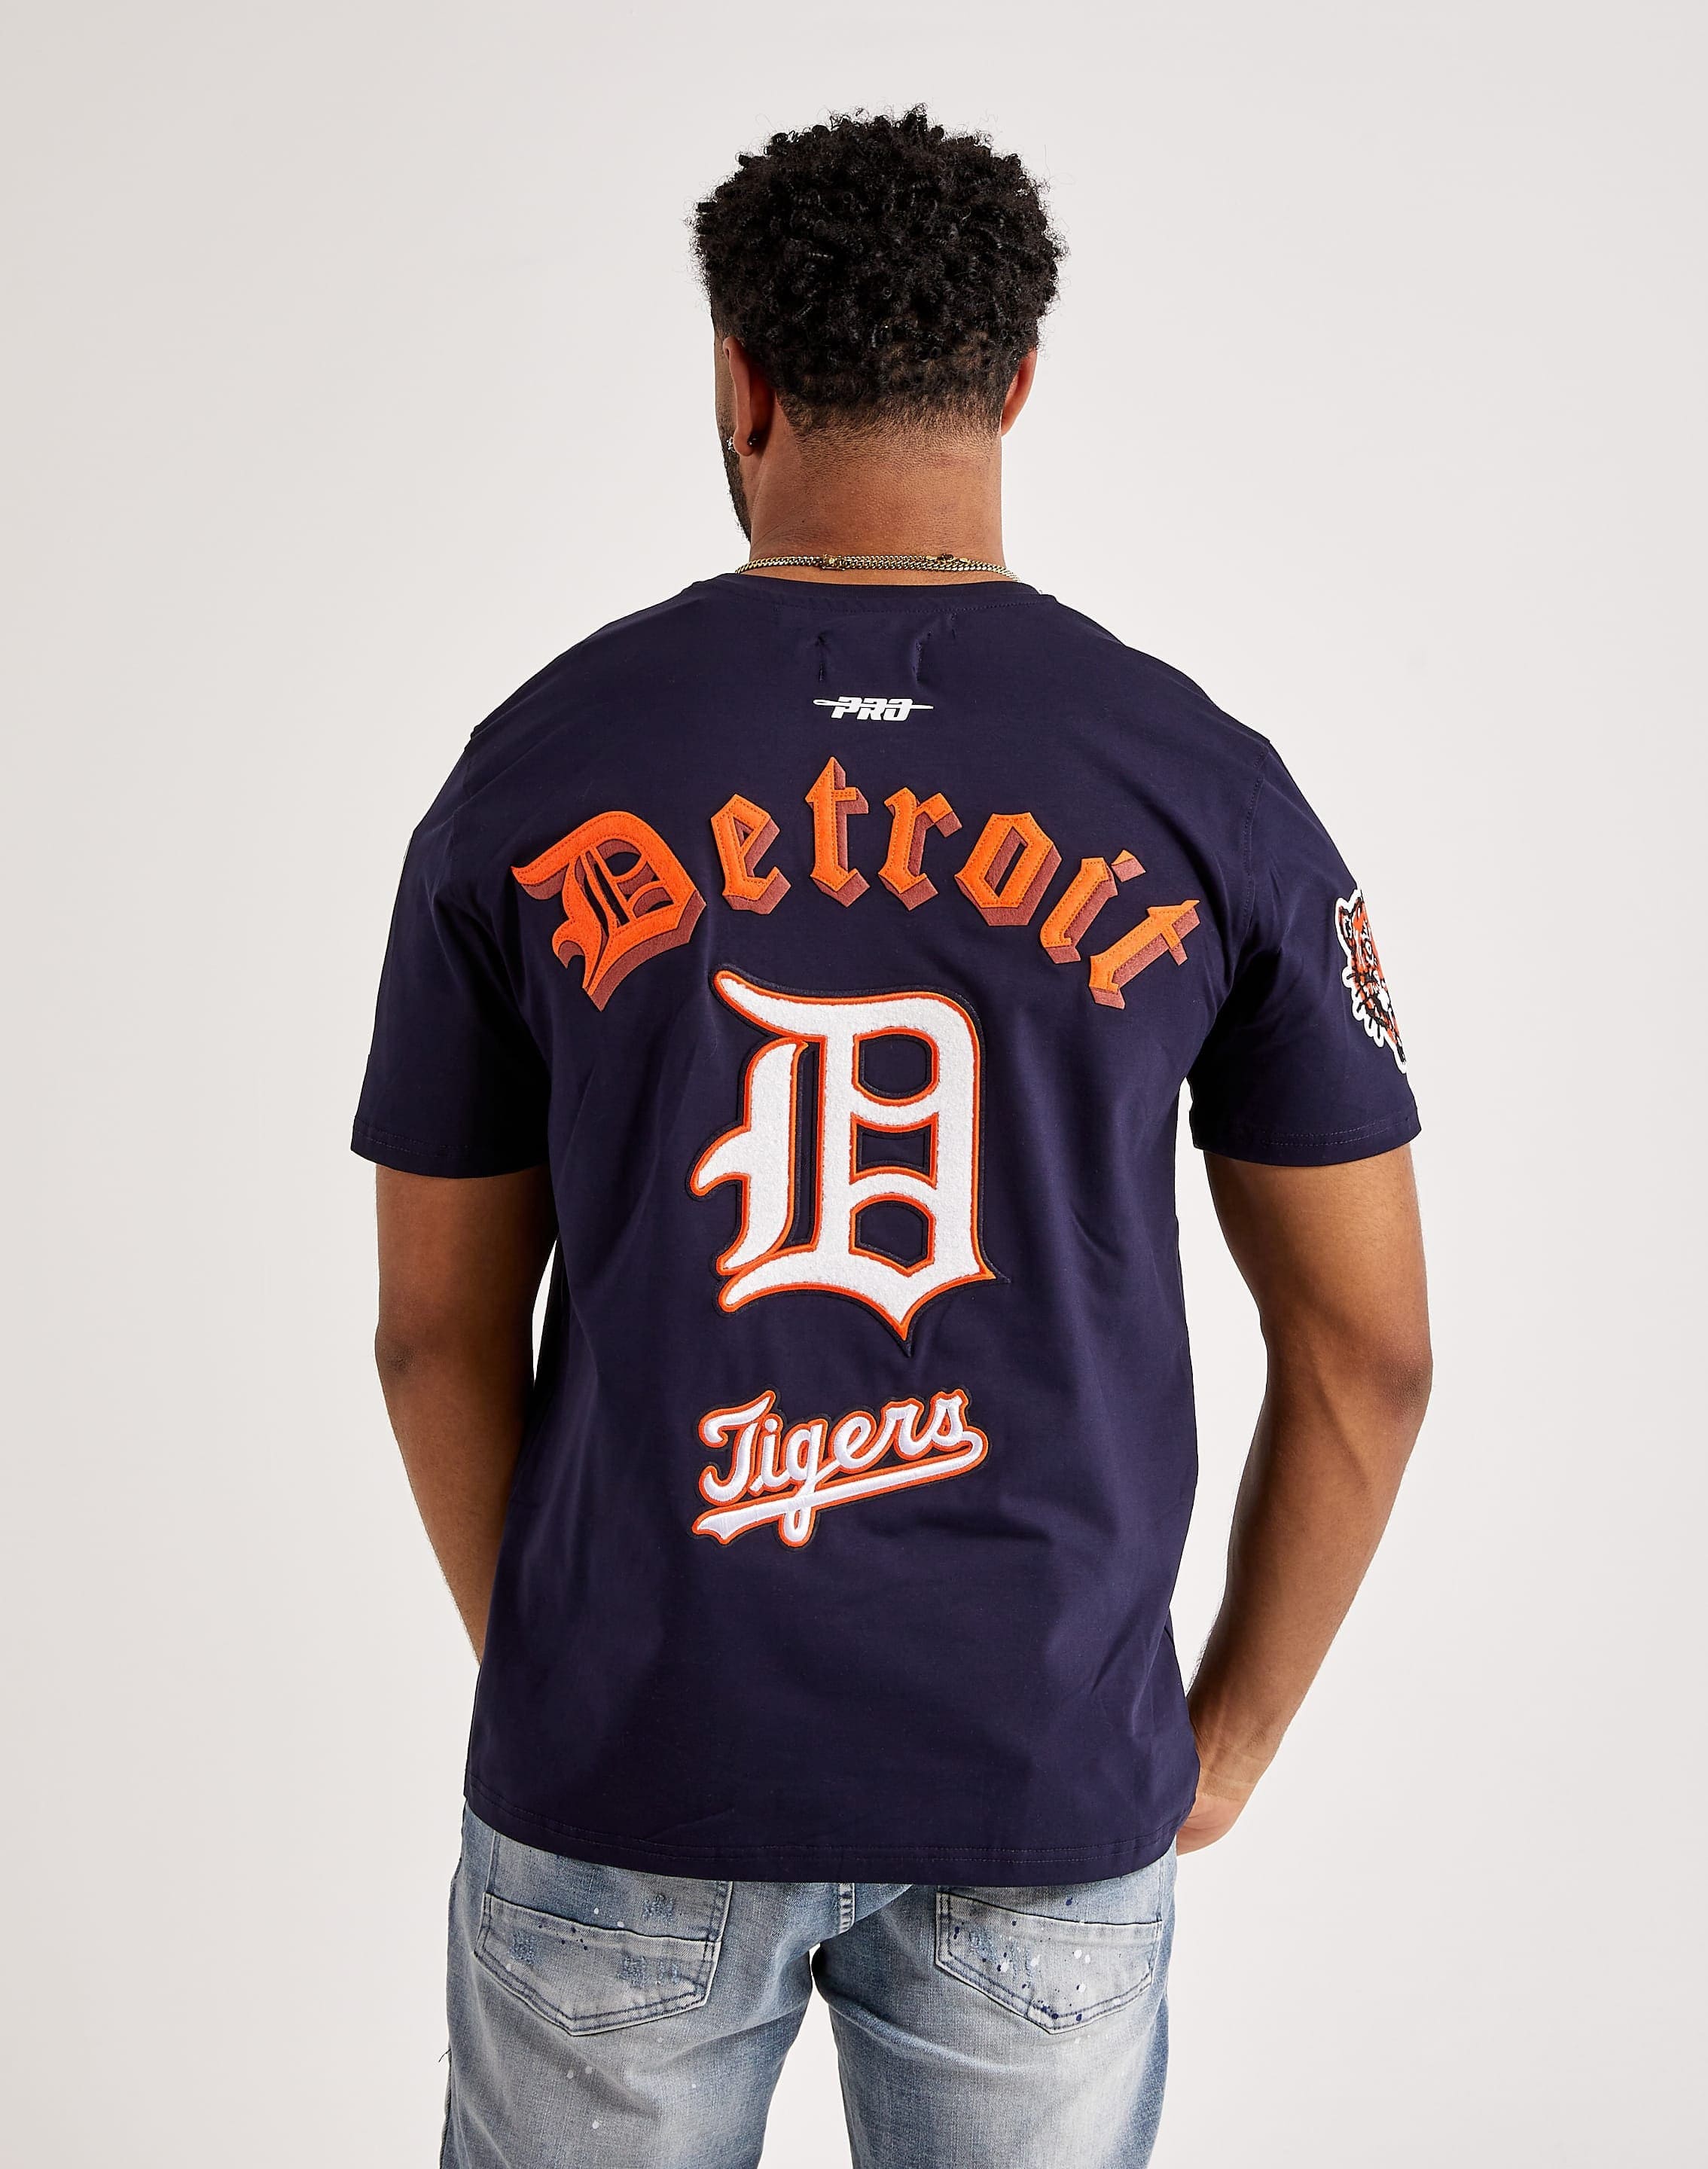 Detroit Tigers Gear, Tigers Jerseys, Detroit Pro Shop, Detroit